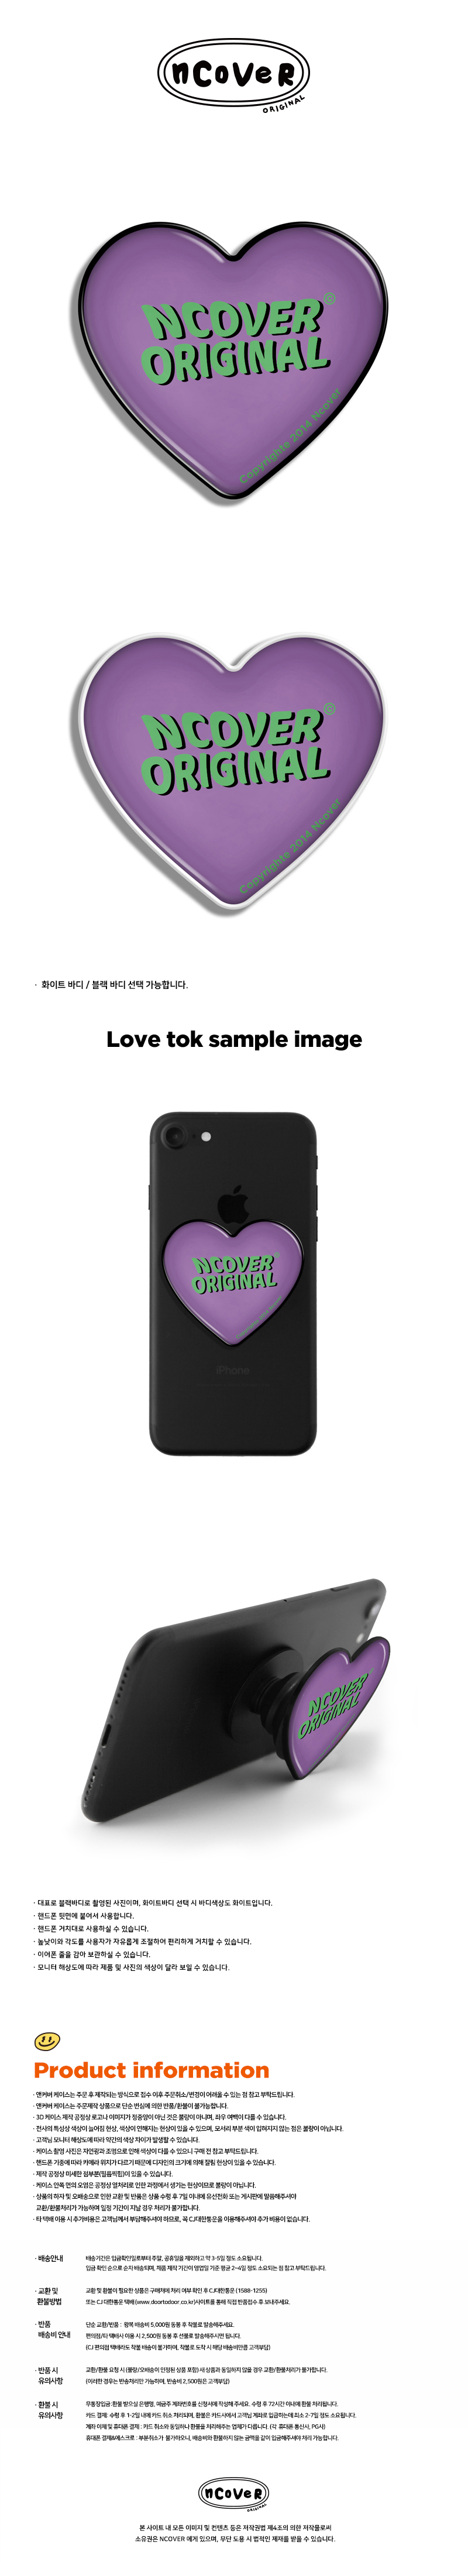  Baloo lettering-purple(heart tok)  10,000원 - 바이인터내셔널주식회사 디지털, 모바일 액세서리, 거치대/홀더, 스마트톡/스마트링 바보사랑  Baloo lettering-purple(heart tok)  10,000원 - 바이인터내셔널주식회사 디지털, 모바일 액세서리, 거치대/홀더, 스마트톡/스마트링 바보사랑